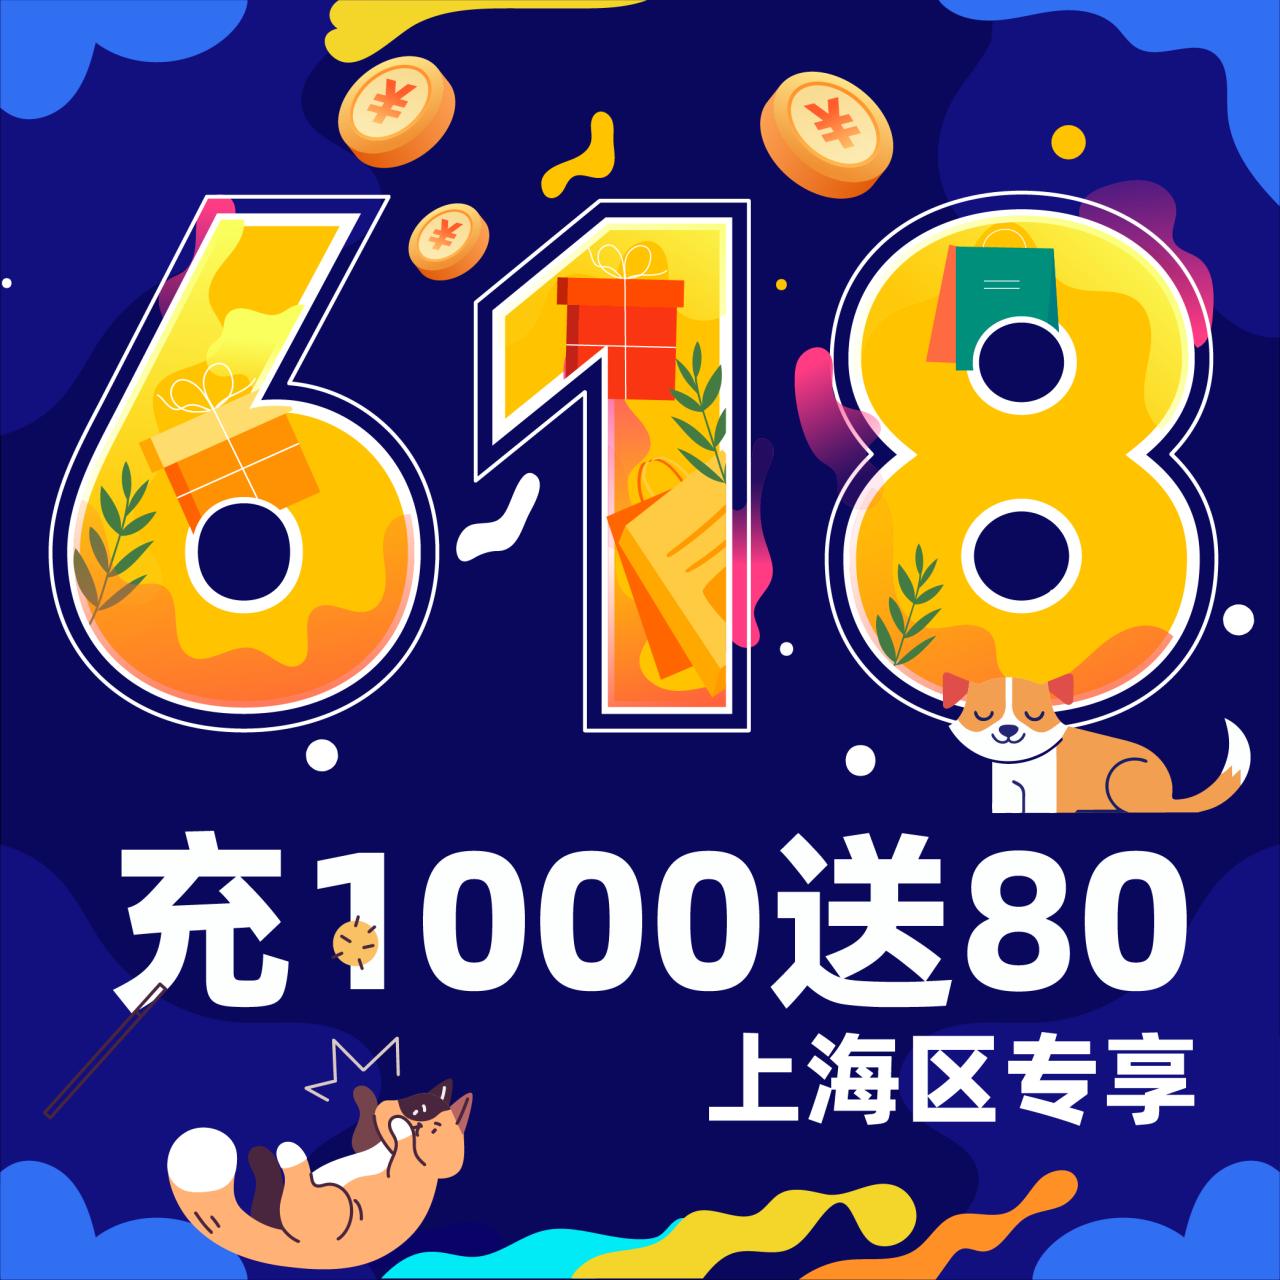 【618特惠】上海通用储值卡 充1000送80